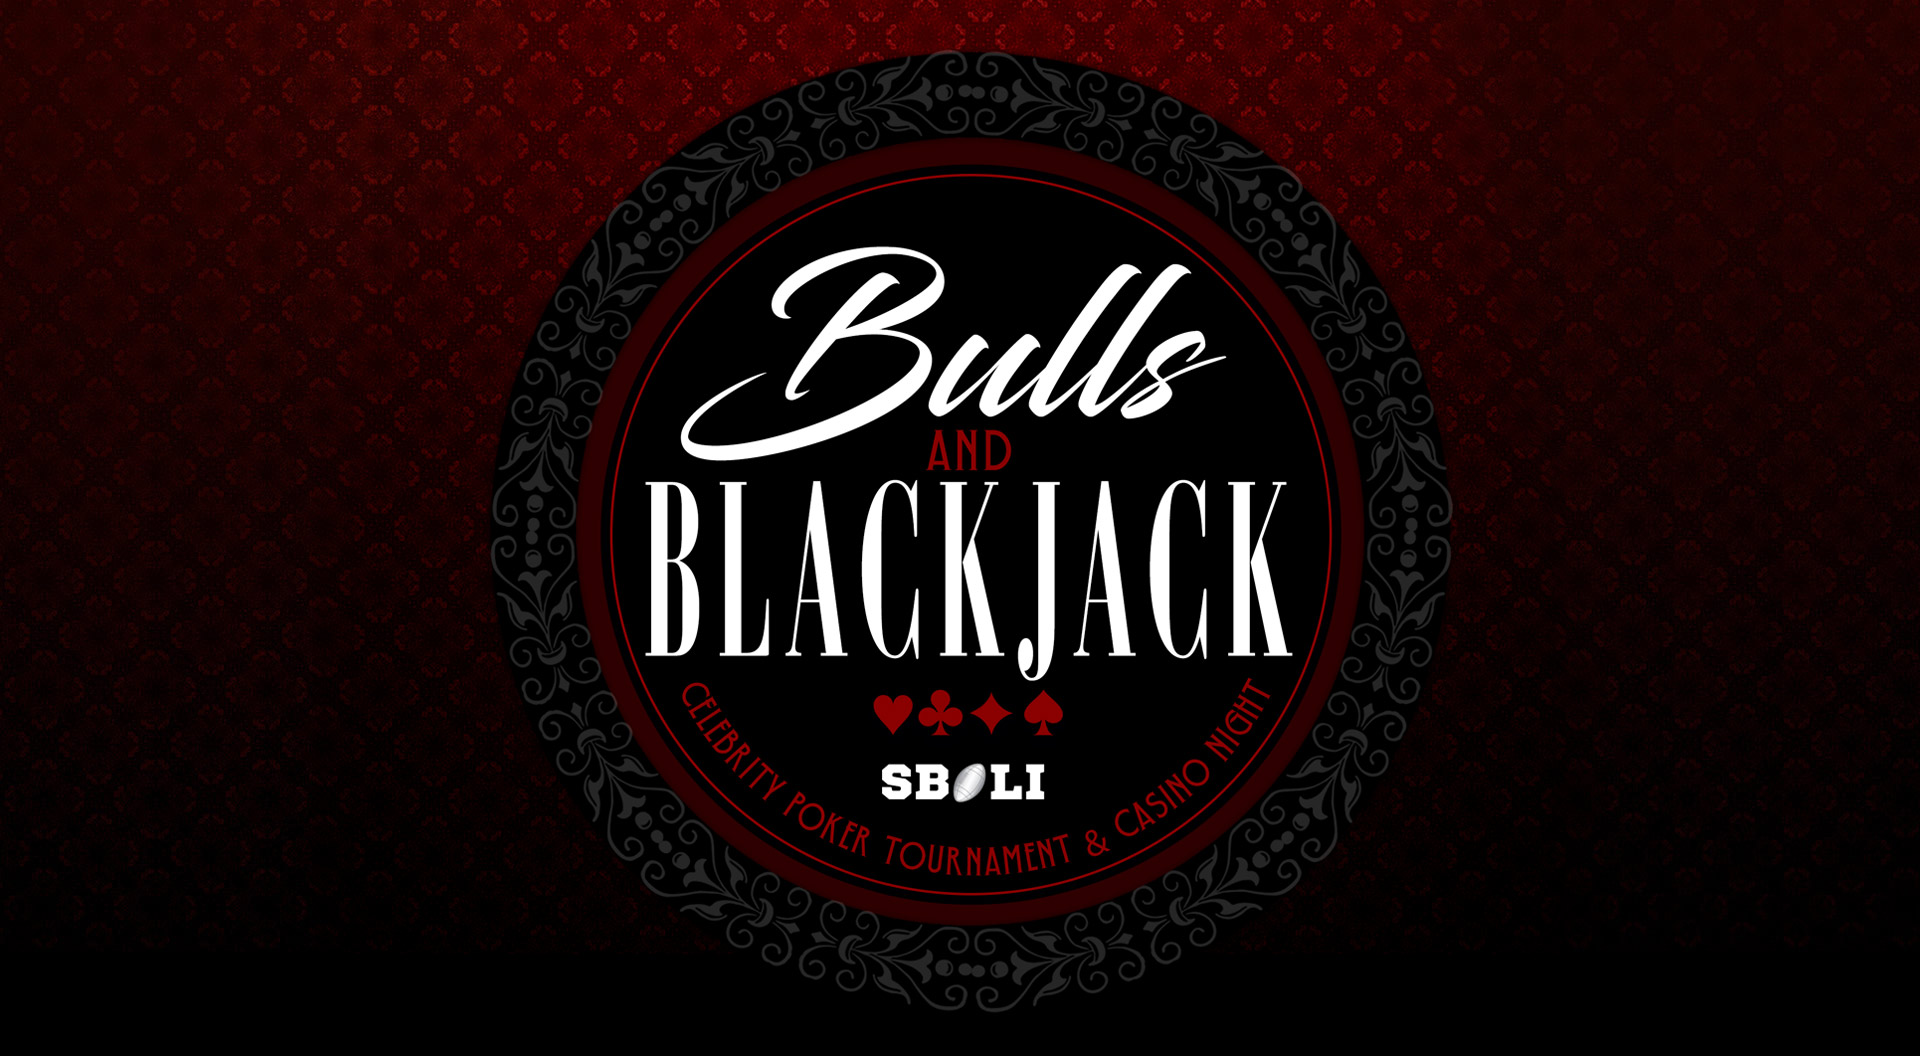 Bulls & Blackjack Celebrity Poker Tournament in River Oaks